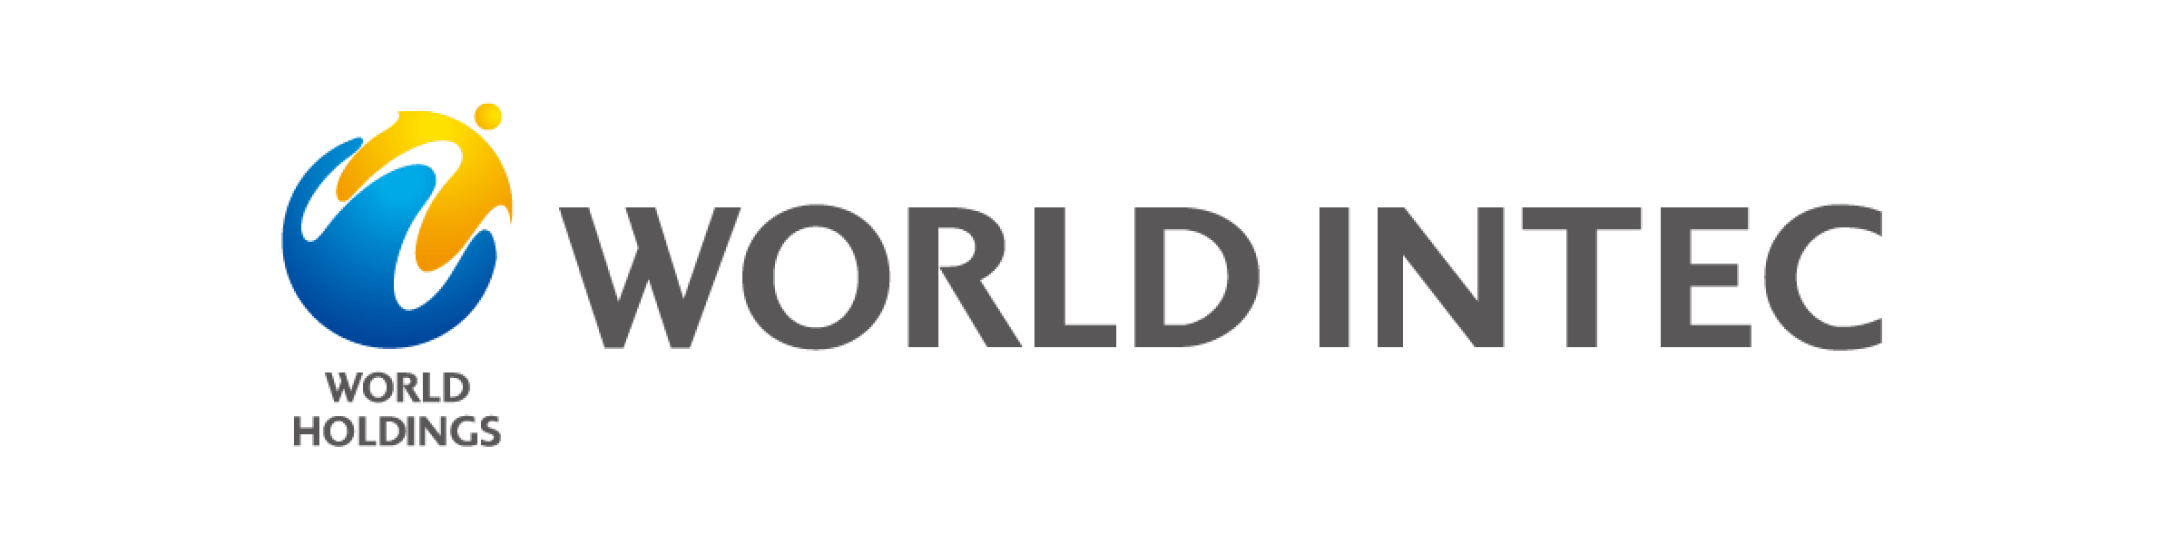 WORLD INTEC　ロゴ